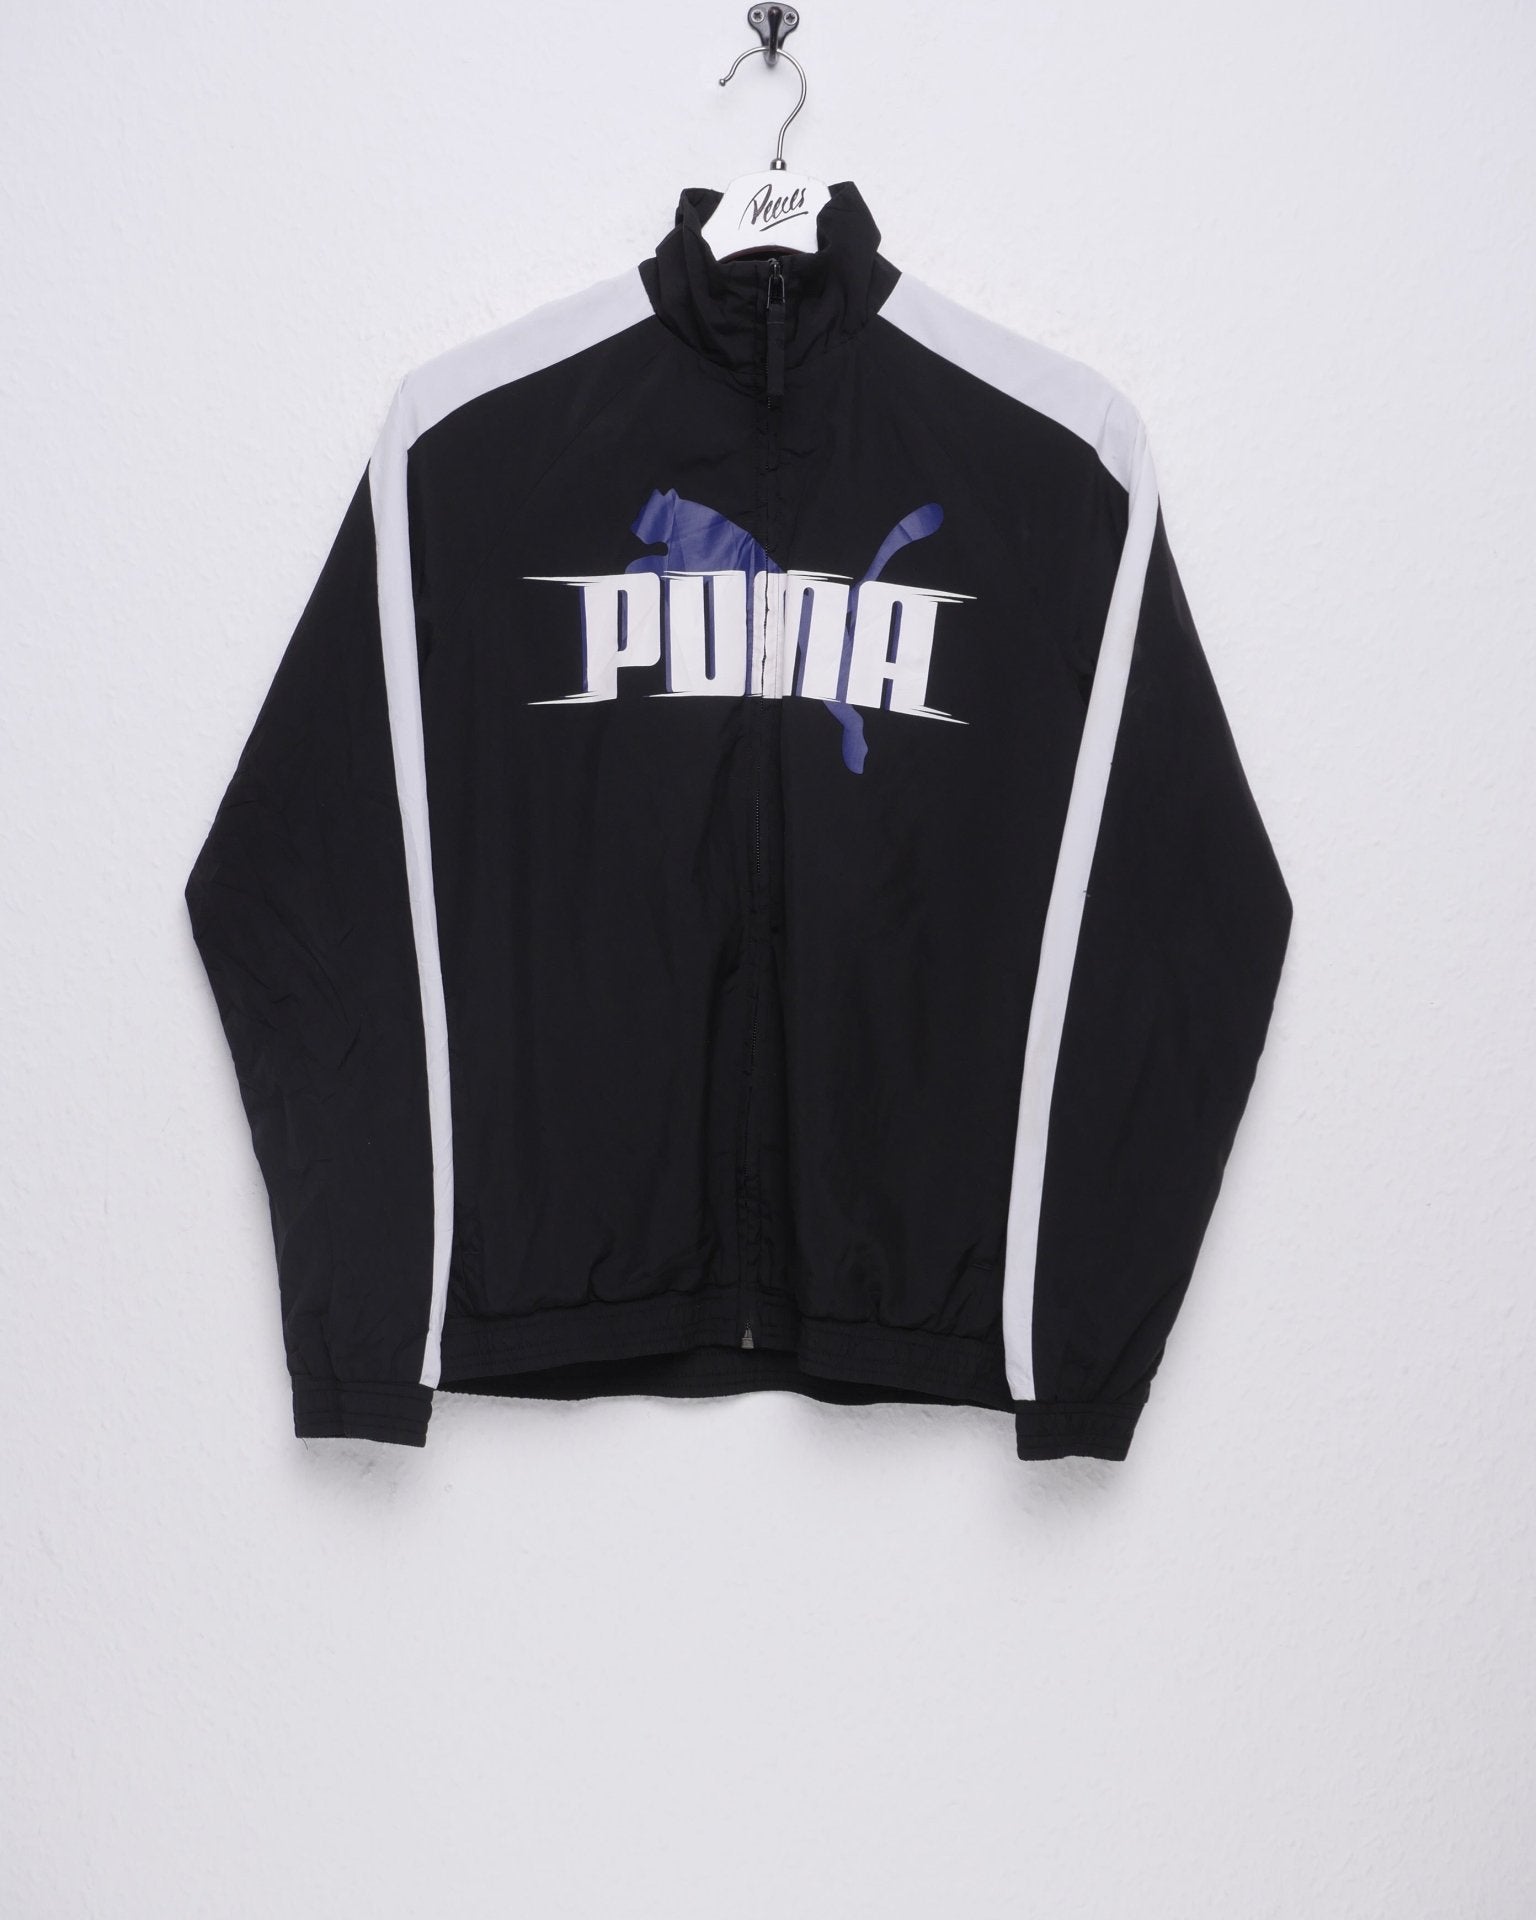 Puma printed Spellout Vintage Track Jacke - Peeces